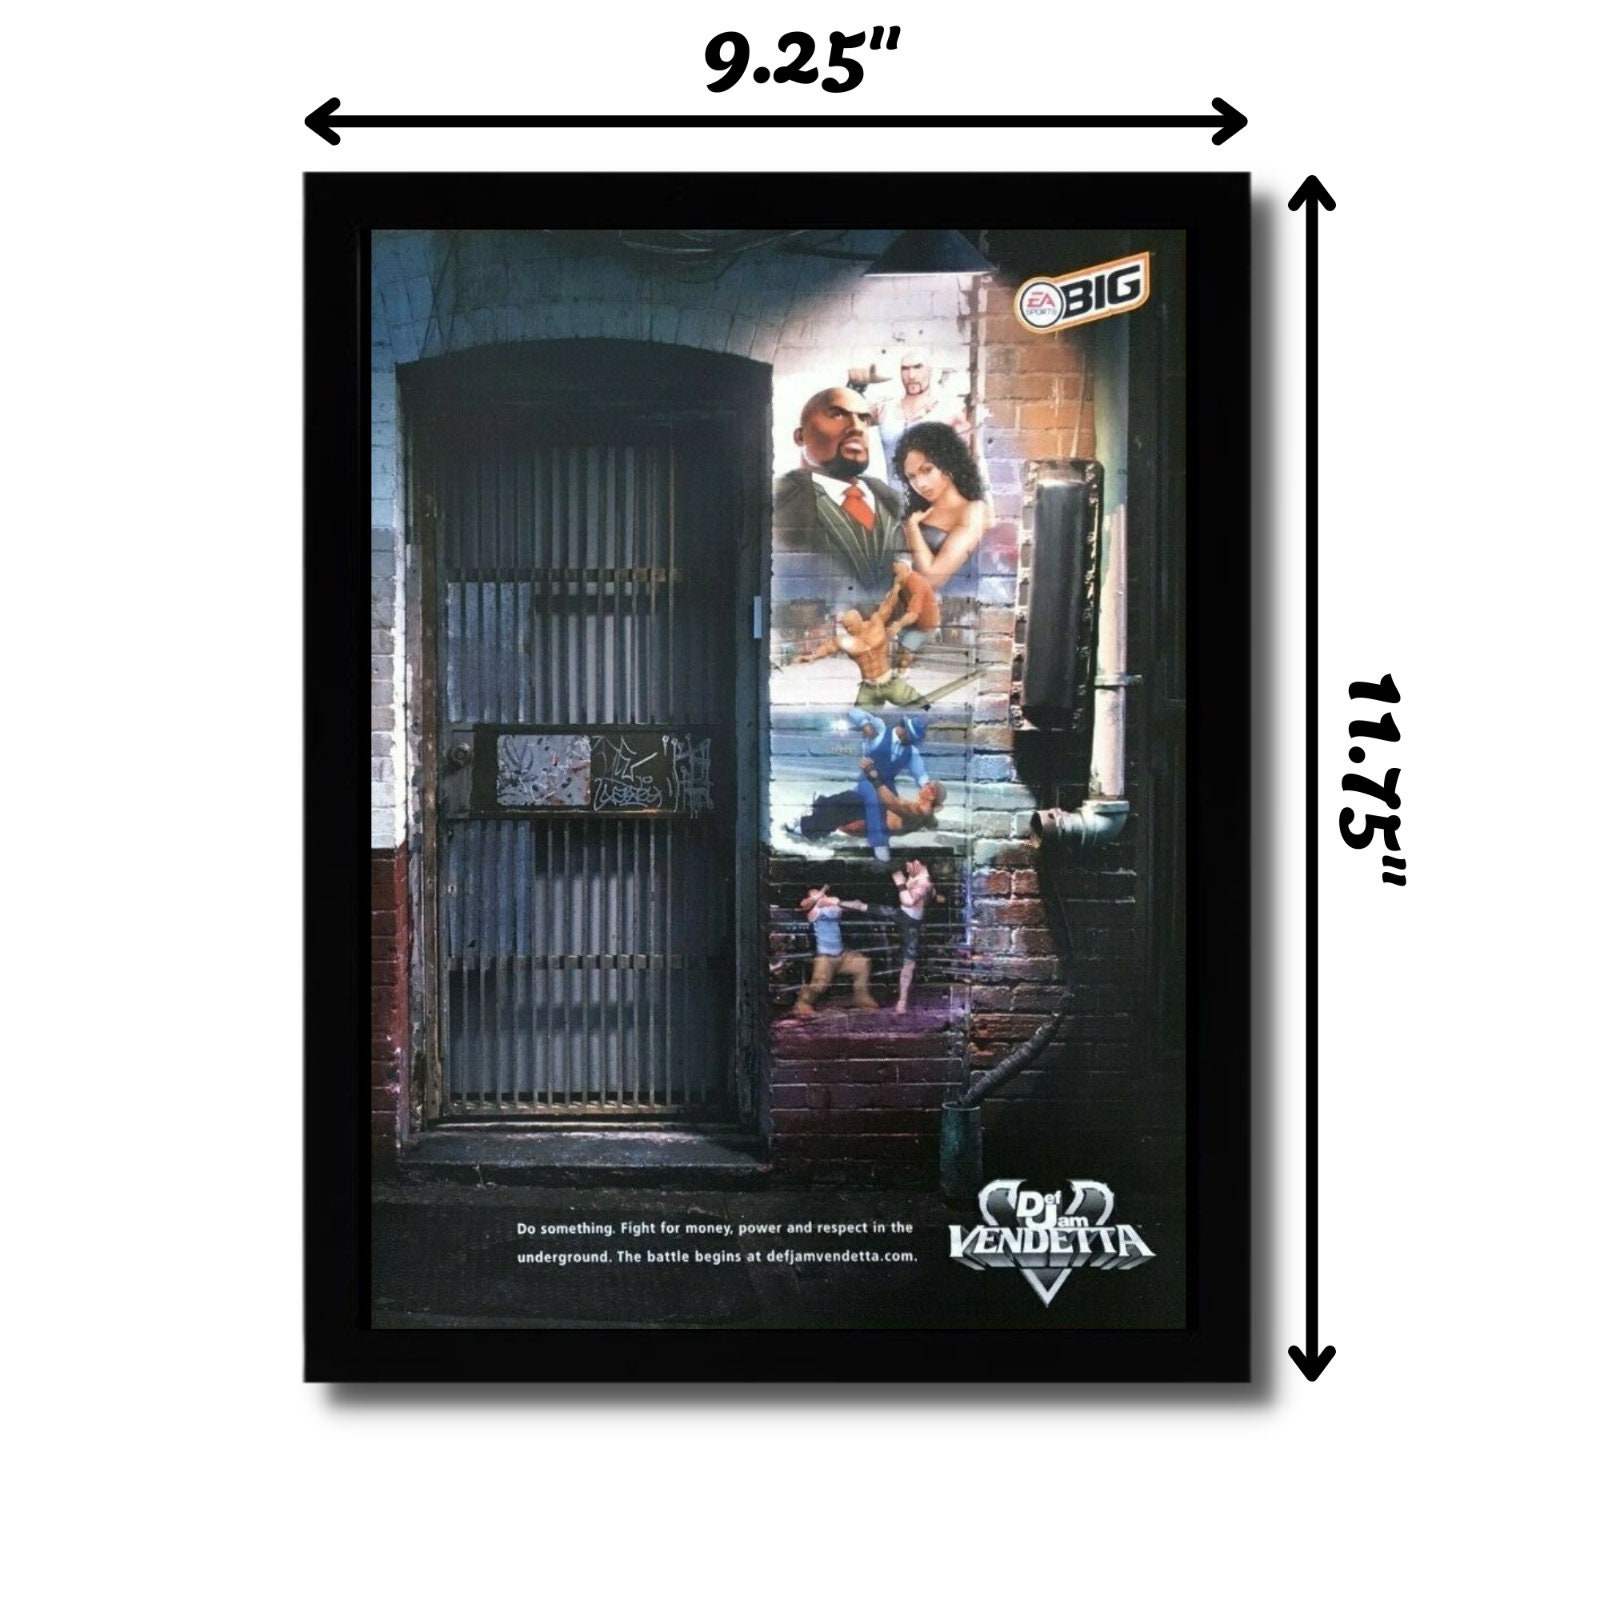 2004 Def Jam Vendetta Framed Print Ad/poster PS2 Gamecube 